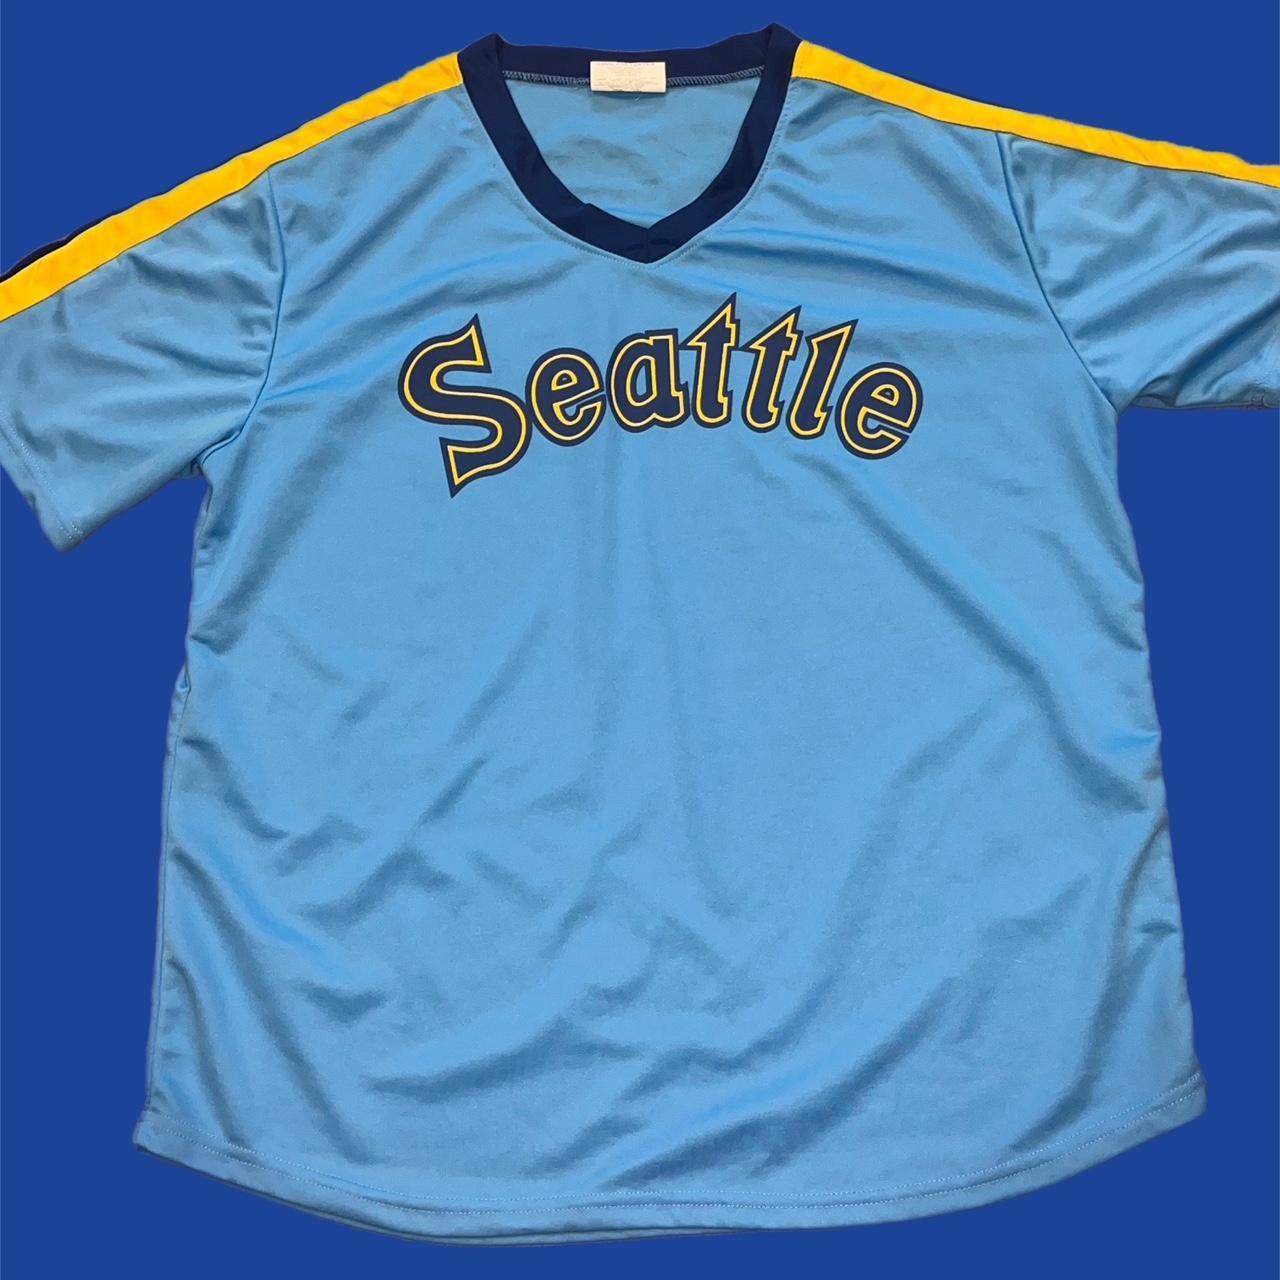 Seattle Mariners Jersey - Depop